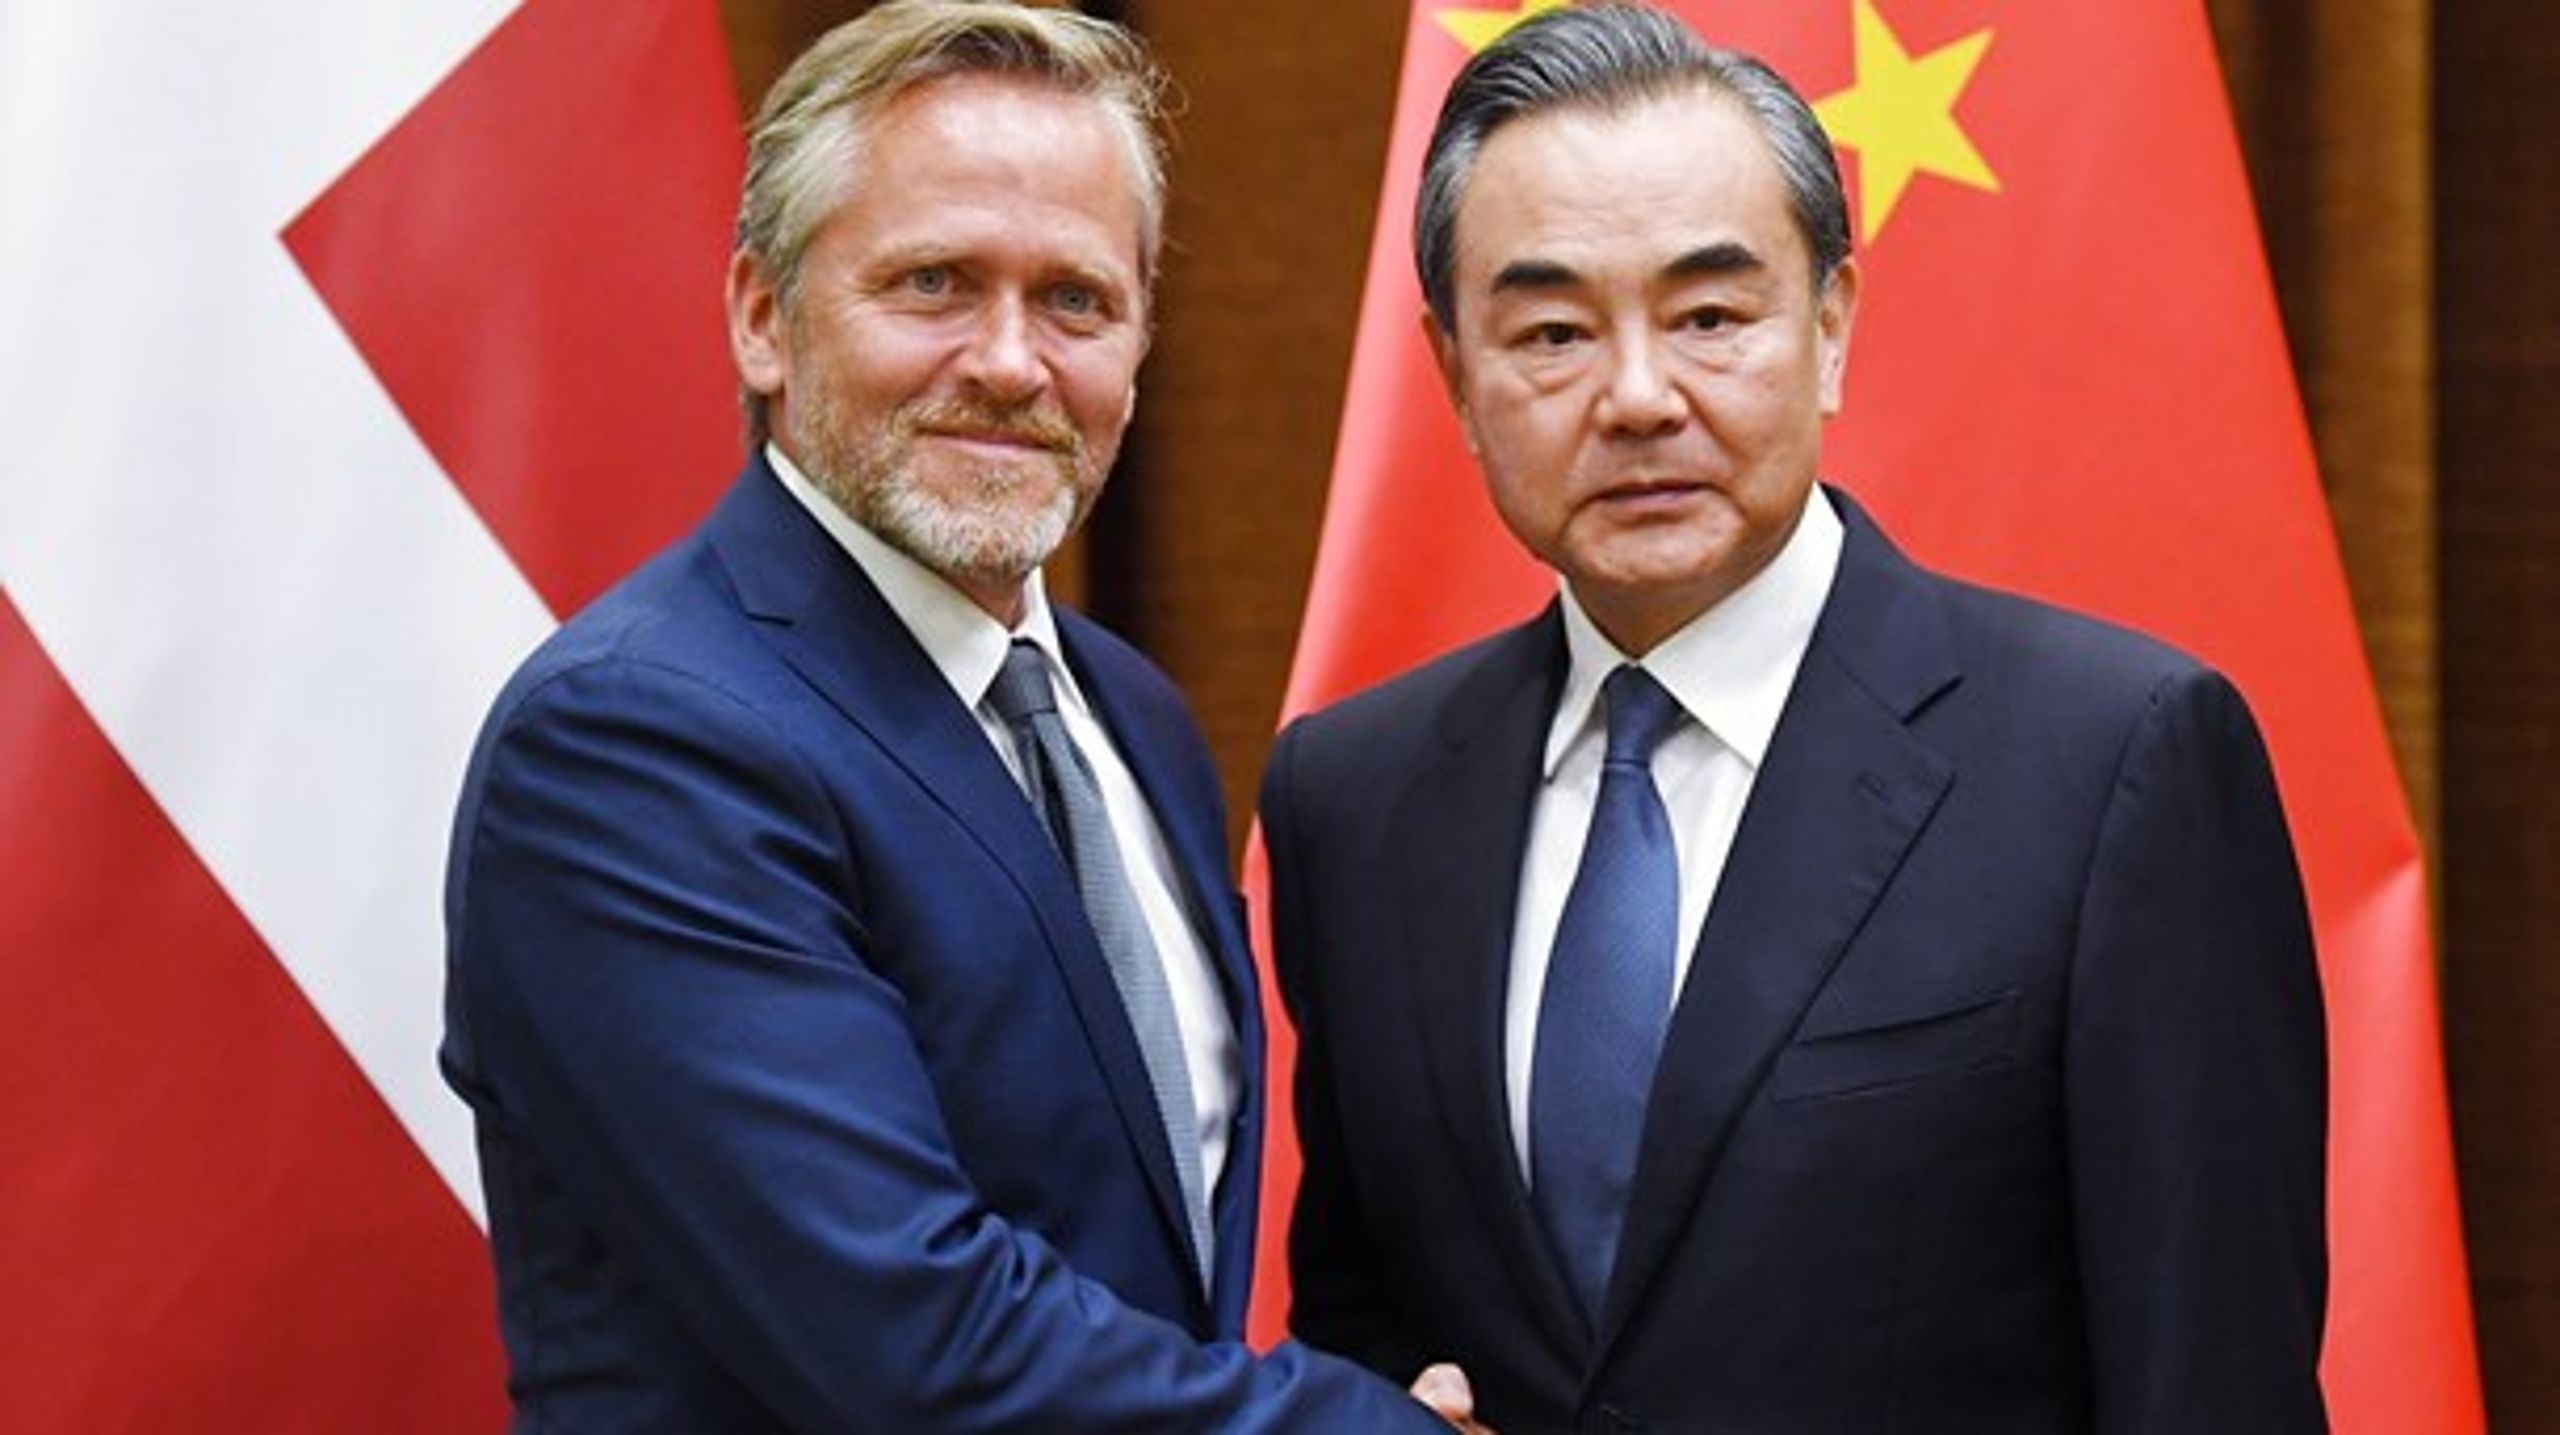 Danmarks udenrigsminister Anders Samuelsen (V) mødes med Kinas udenrigsminister Wang Yi i juni 2018.